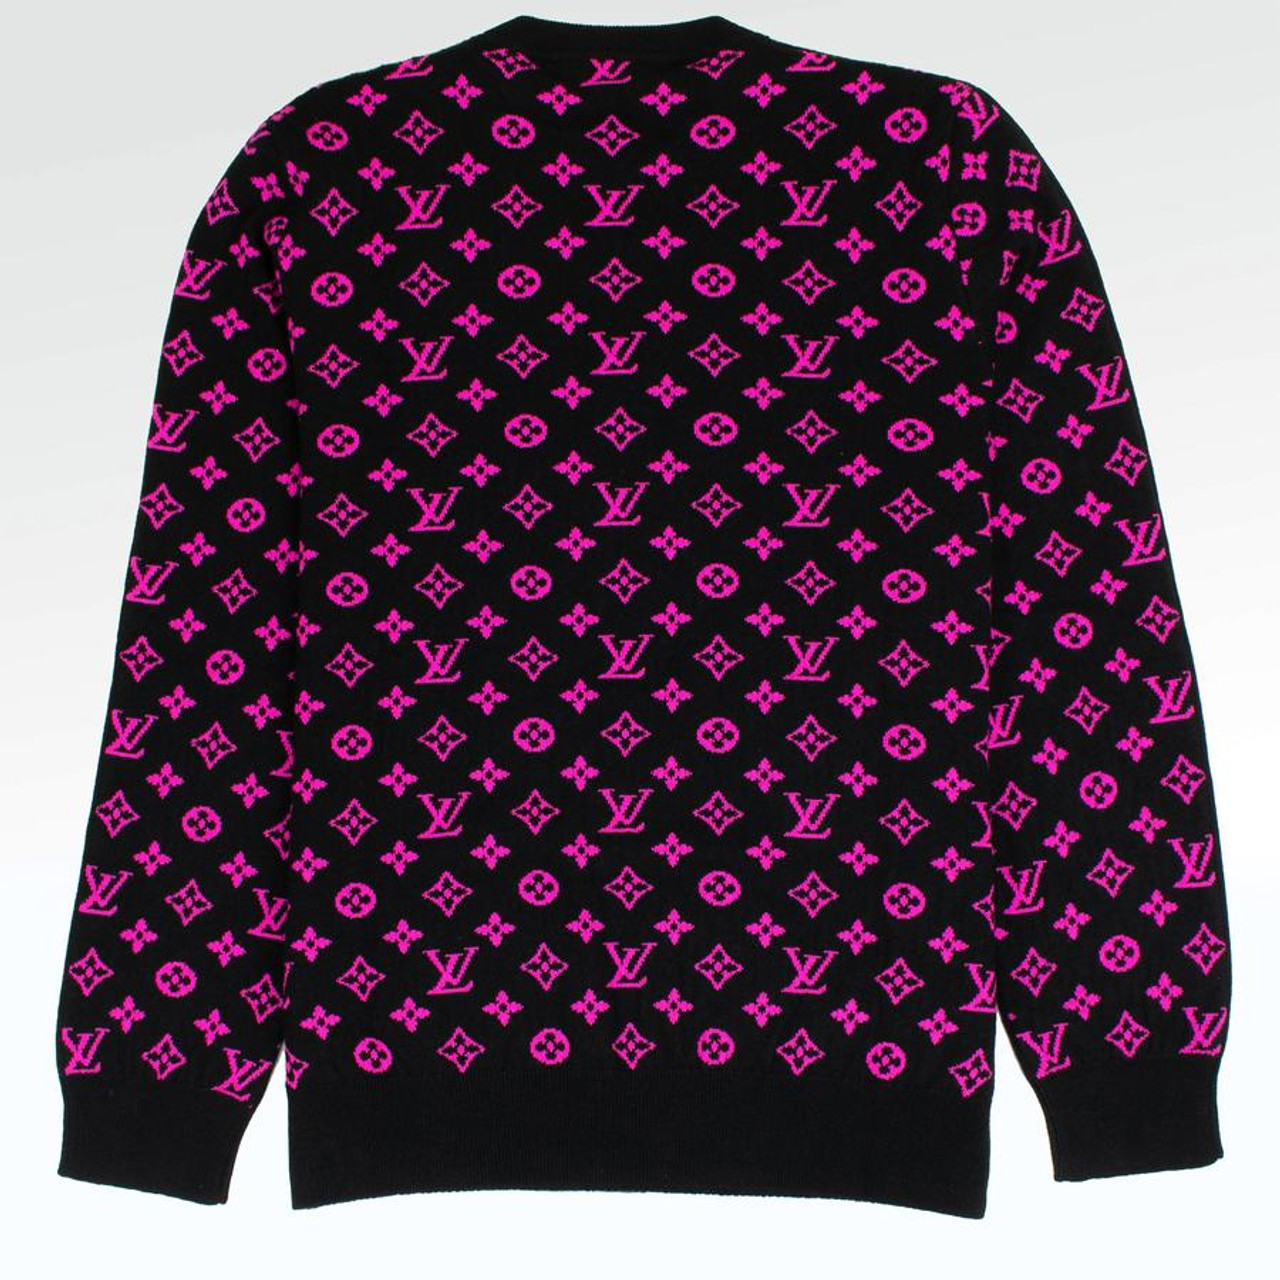 LV Colorful Monogram Unisex Black Sweater 34.90